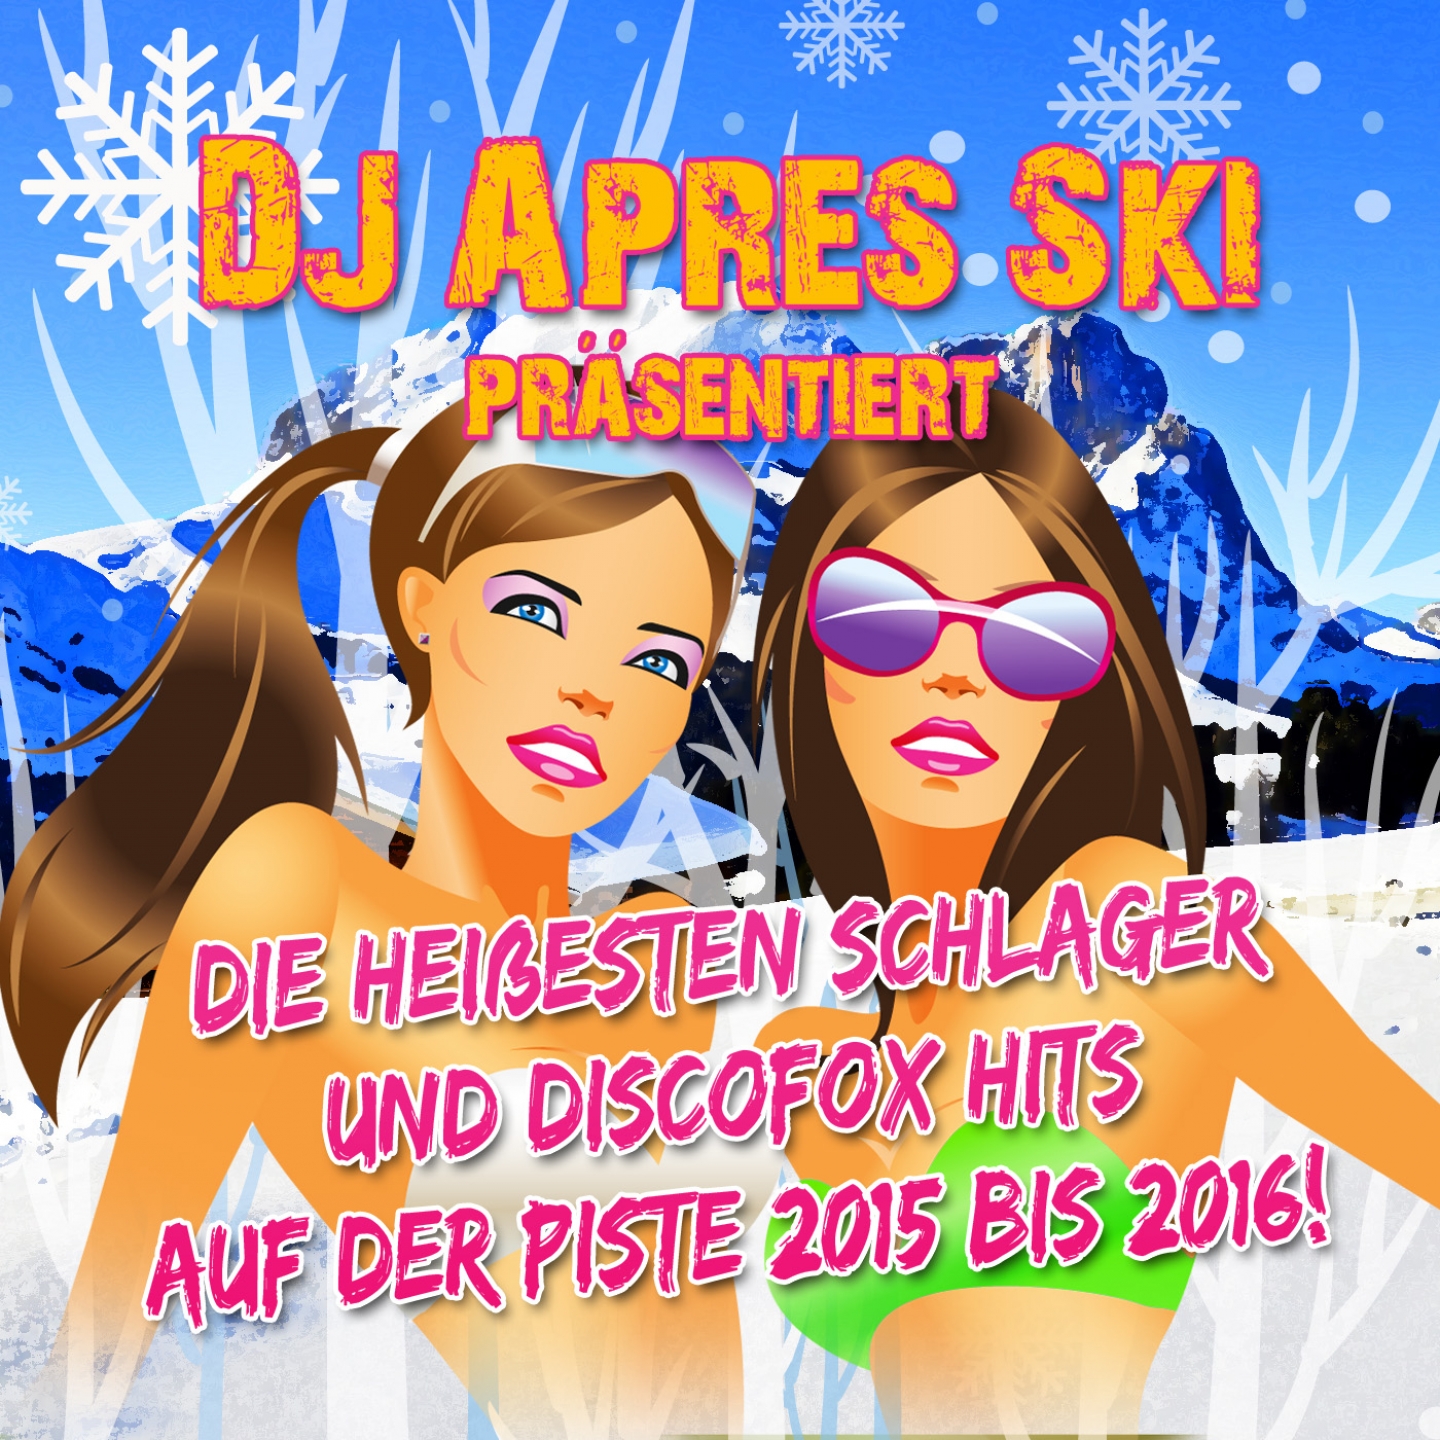 DJ Apres Ski pr sentiert  die hei esten Schlager und Discofox Hits auf der Piste 2015 bis 2016!